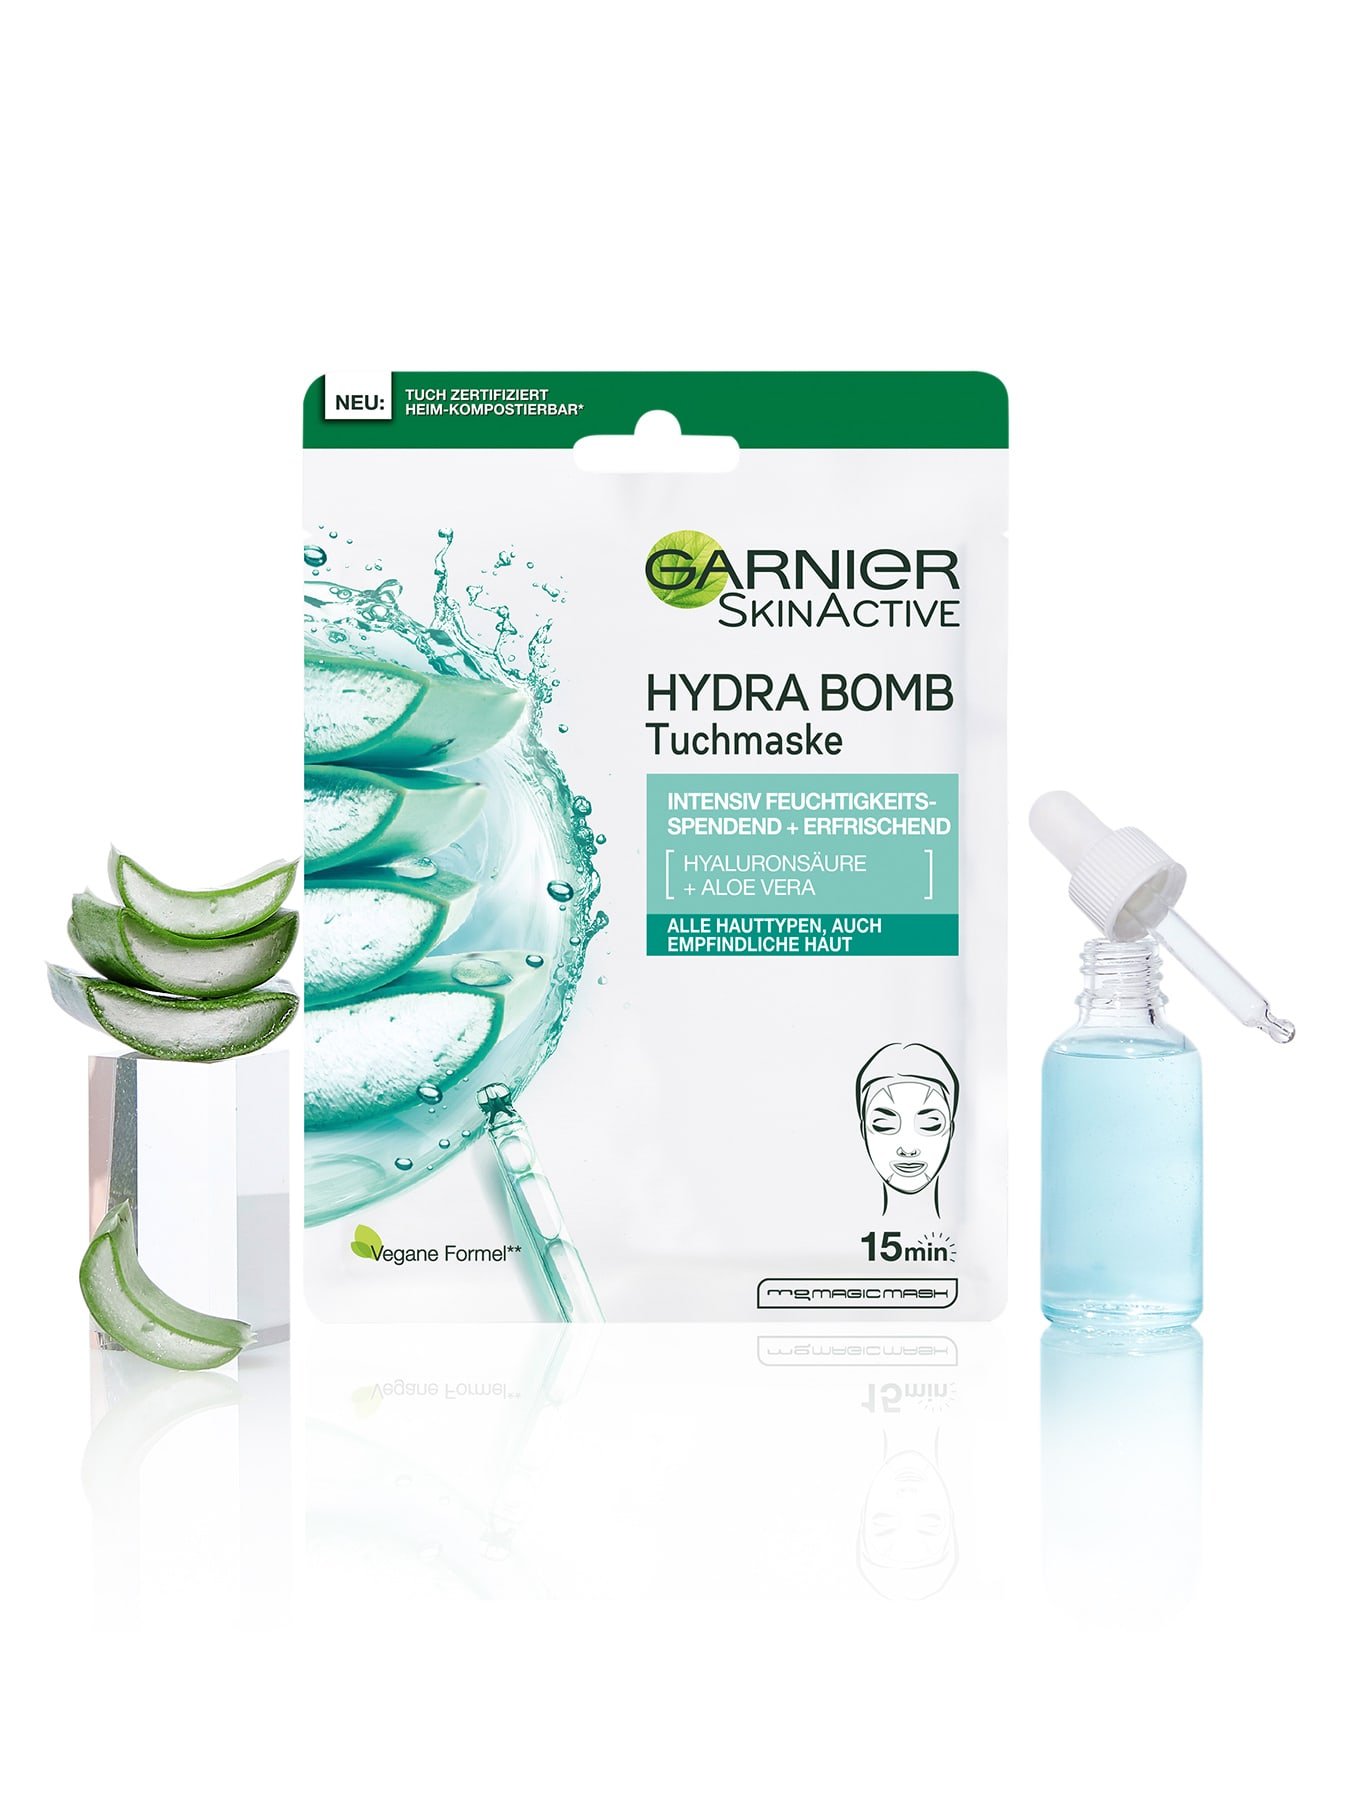 Verpackung der Garnier Hydra Bomb Tuchmaske mit Aloe Vera Scheiben und einem Glas voll Hyaluronsaeure